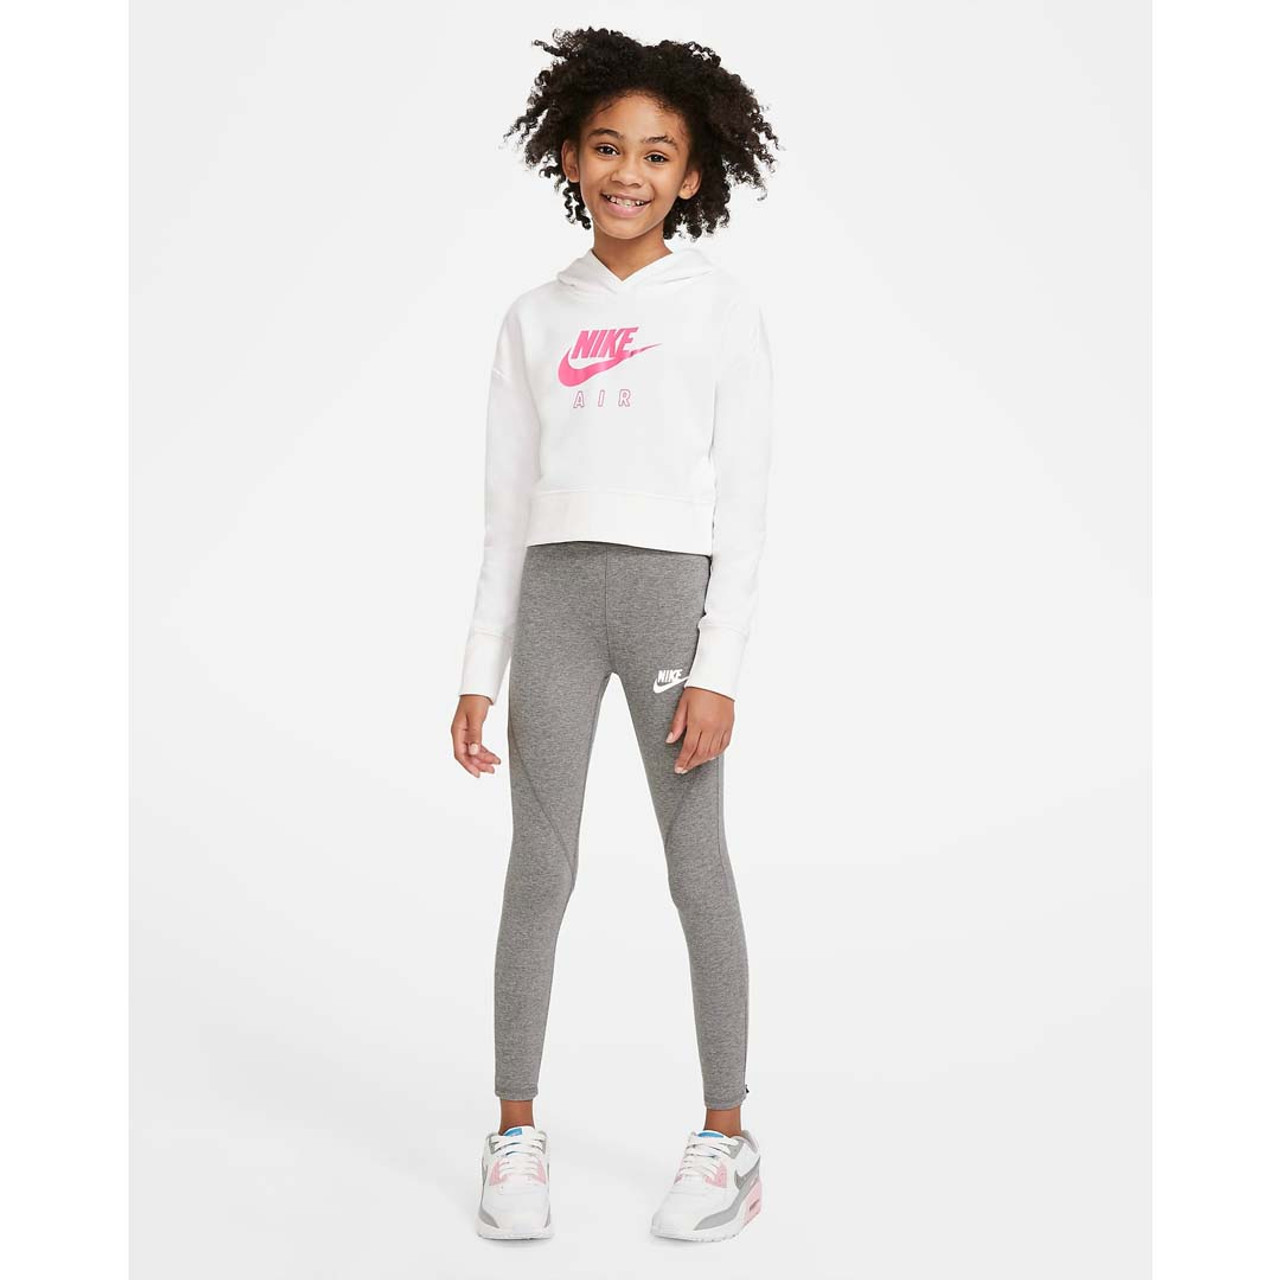 Nike Nike Sportswear Girls' High Waisted Leggings - Black/White